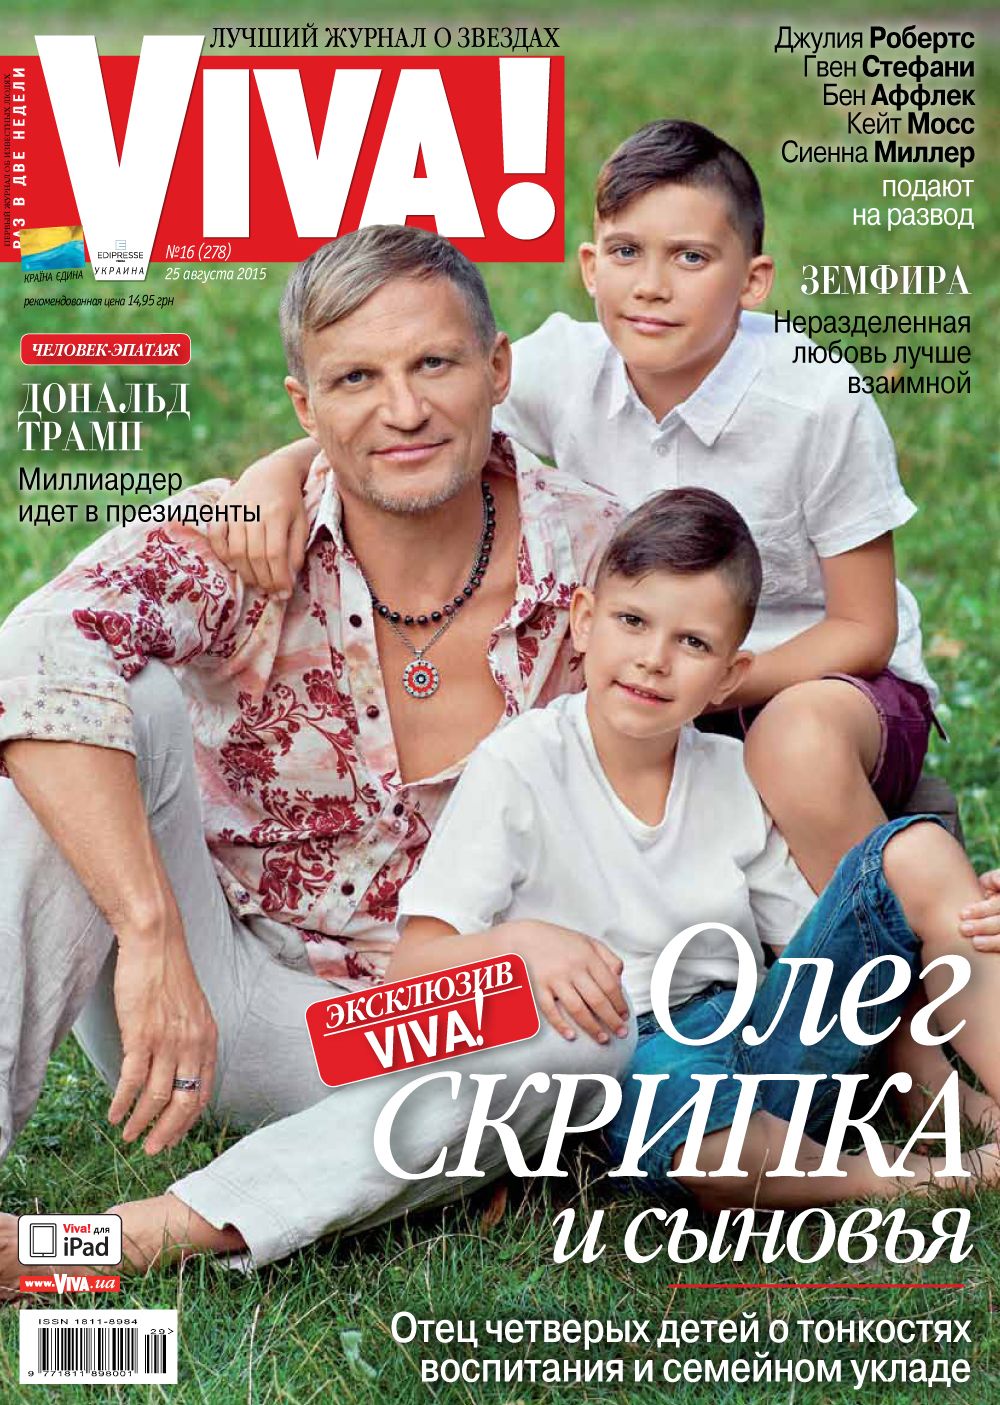 Олег Скрипка и его сыновья на обложке журнала Viva!